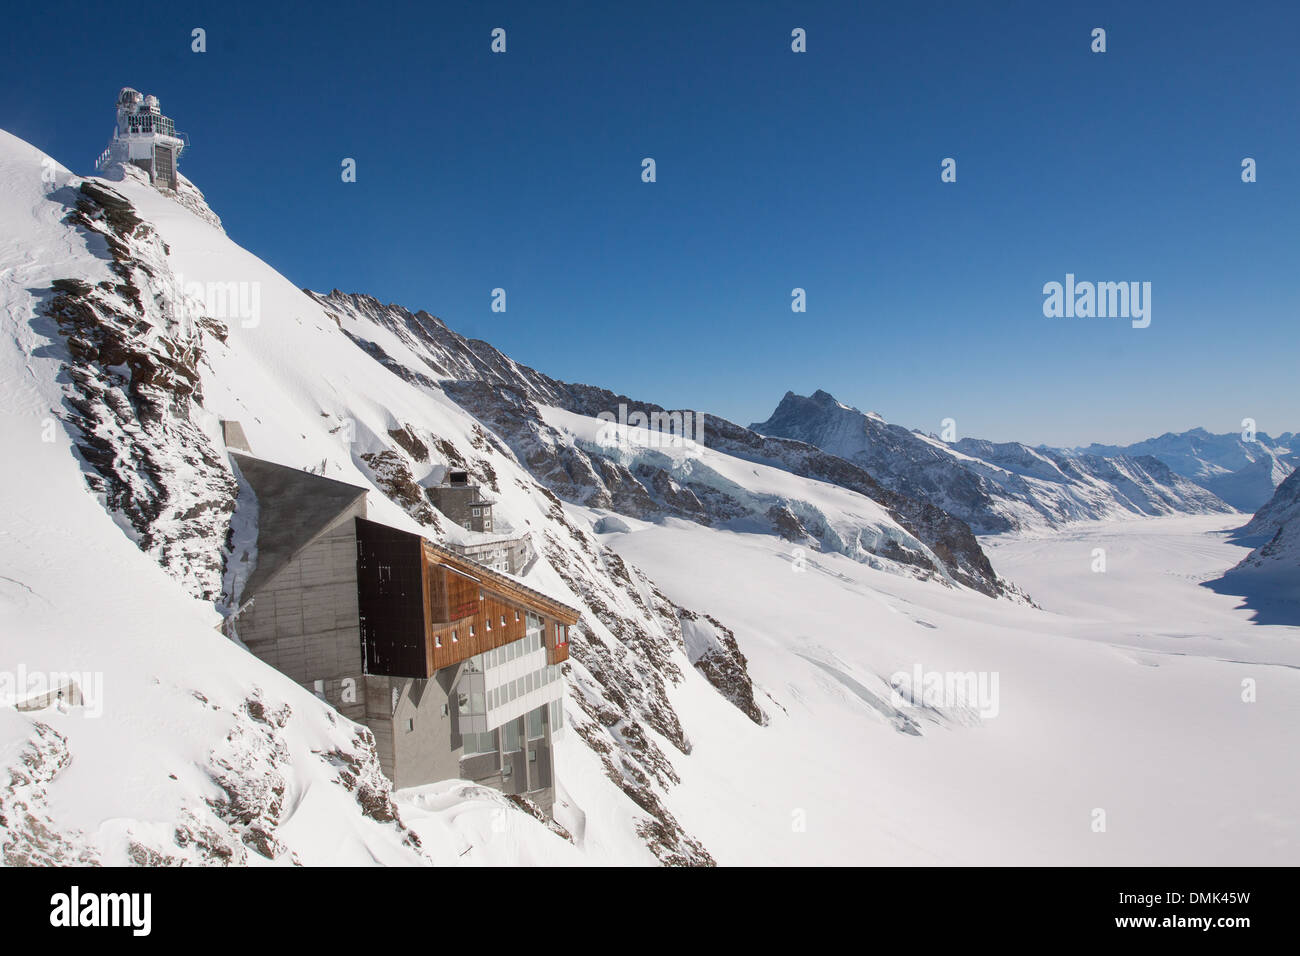 Scena invernale del ghiacciaio di Aletsch e JUNGFRAUJOCH PASS CON L'Osservatorio soprannominato la sfinge in corrispondenza del suo vertice, Jungfrau, Alpi bernesi, cantone di Berna, Svizzera Foto Stock